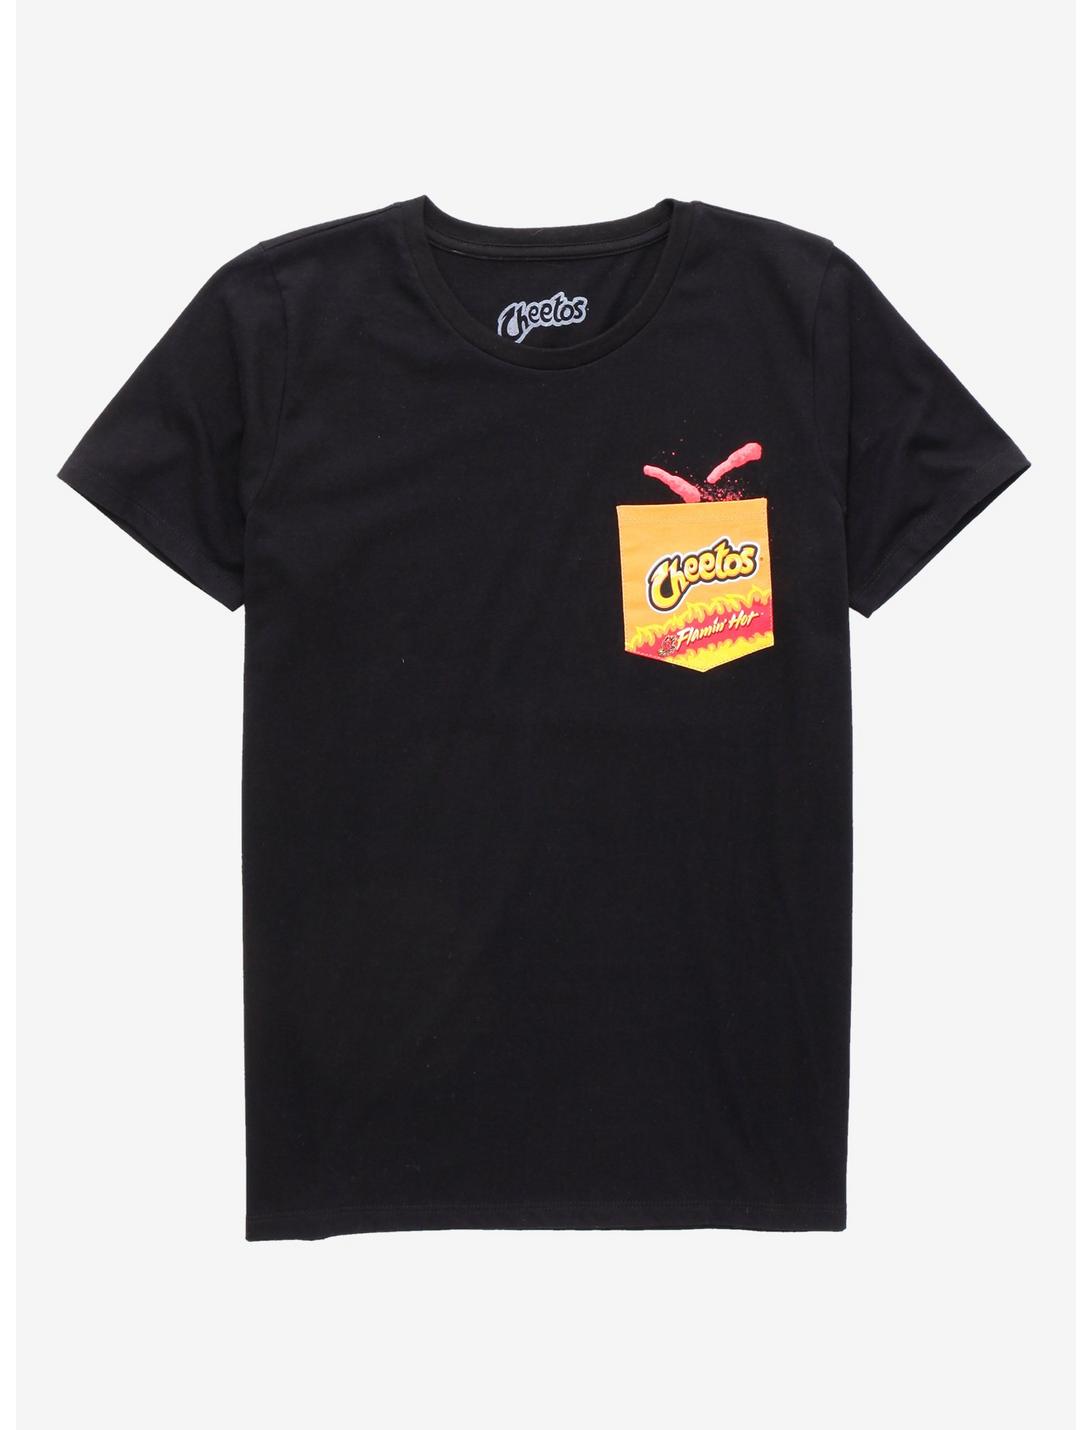 Cheetos Flamin' Hot Pocket T-Shirt - BoxLunch Exclusive, BLACK, hi-res